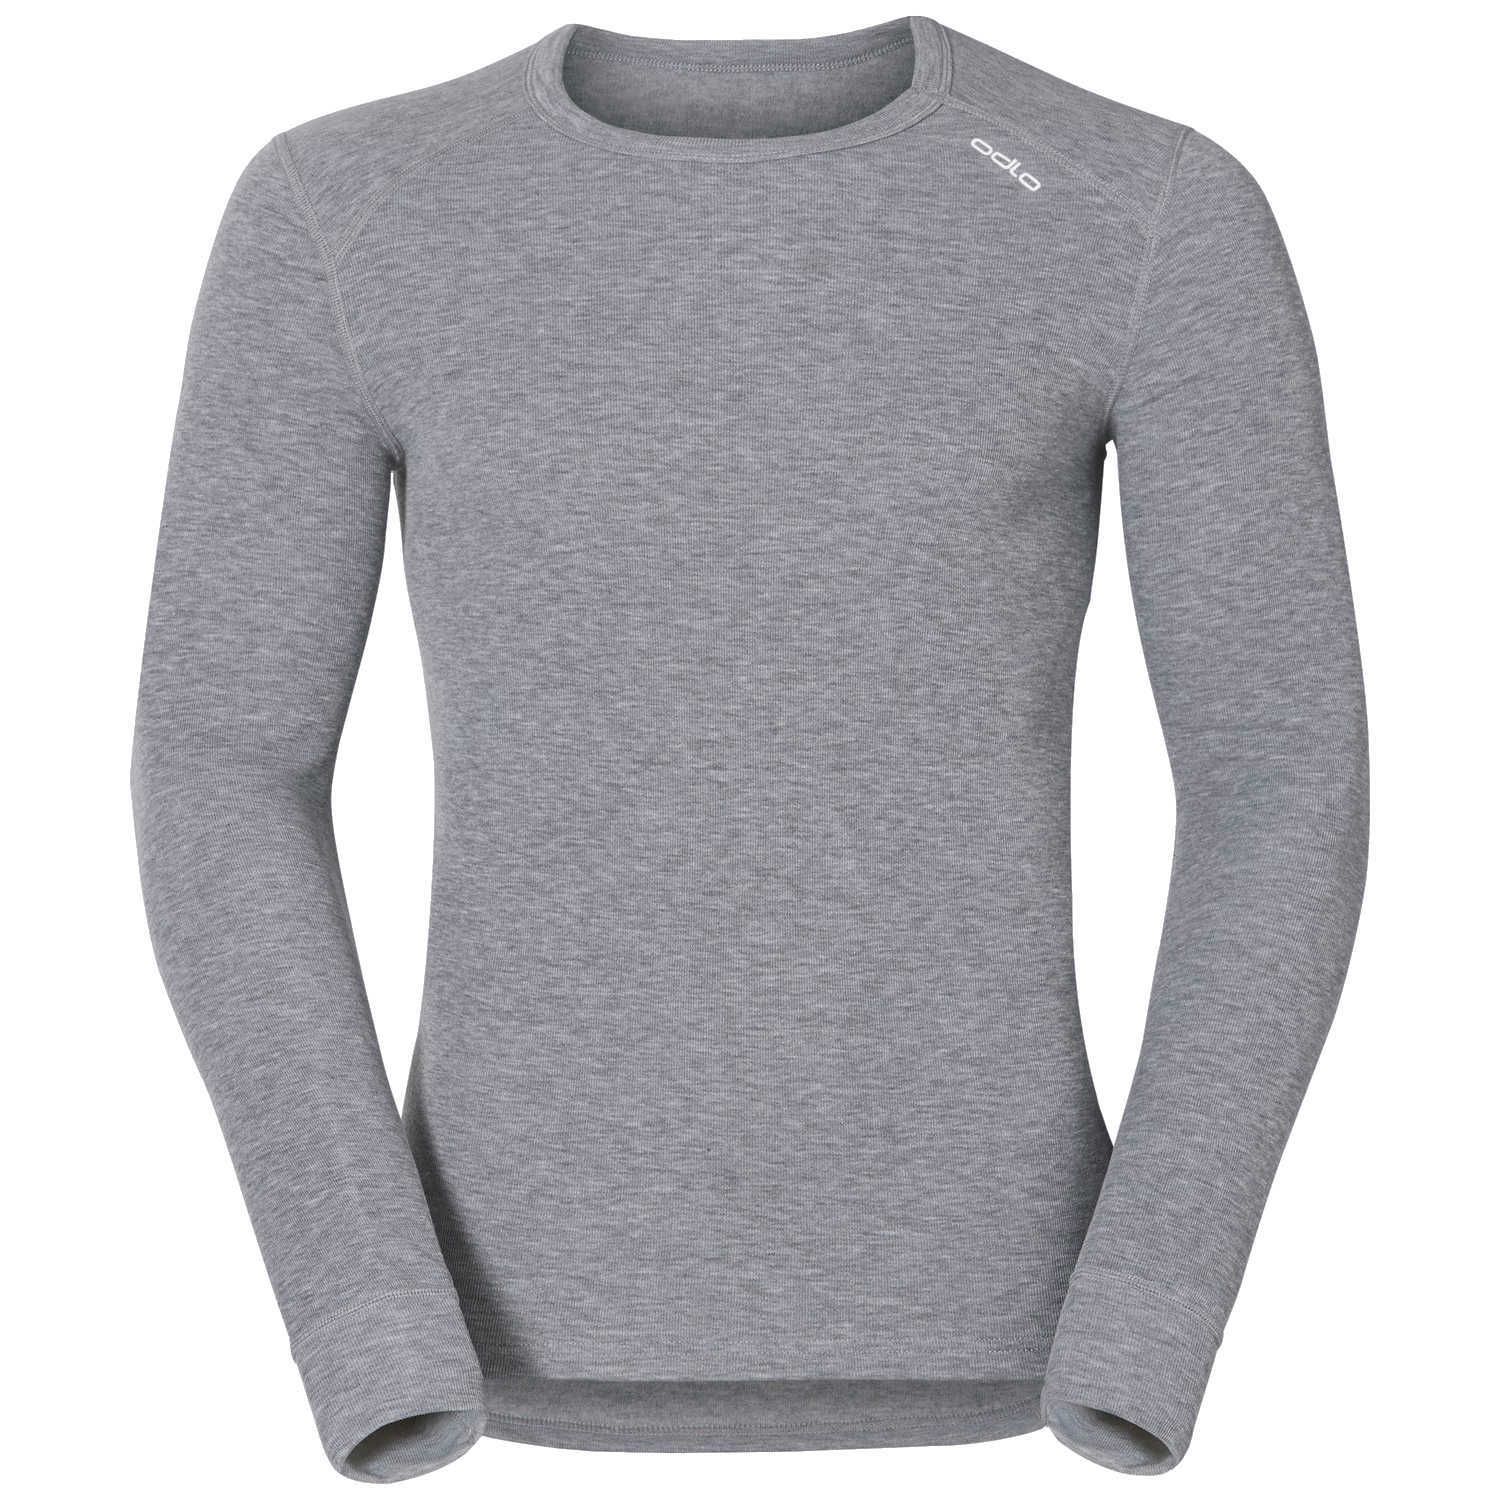 T-Shirt Homme Manches Longues Warm col ras de cou - Grey Melange